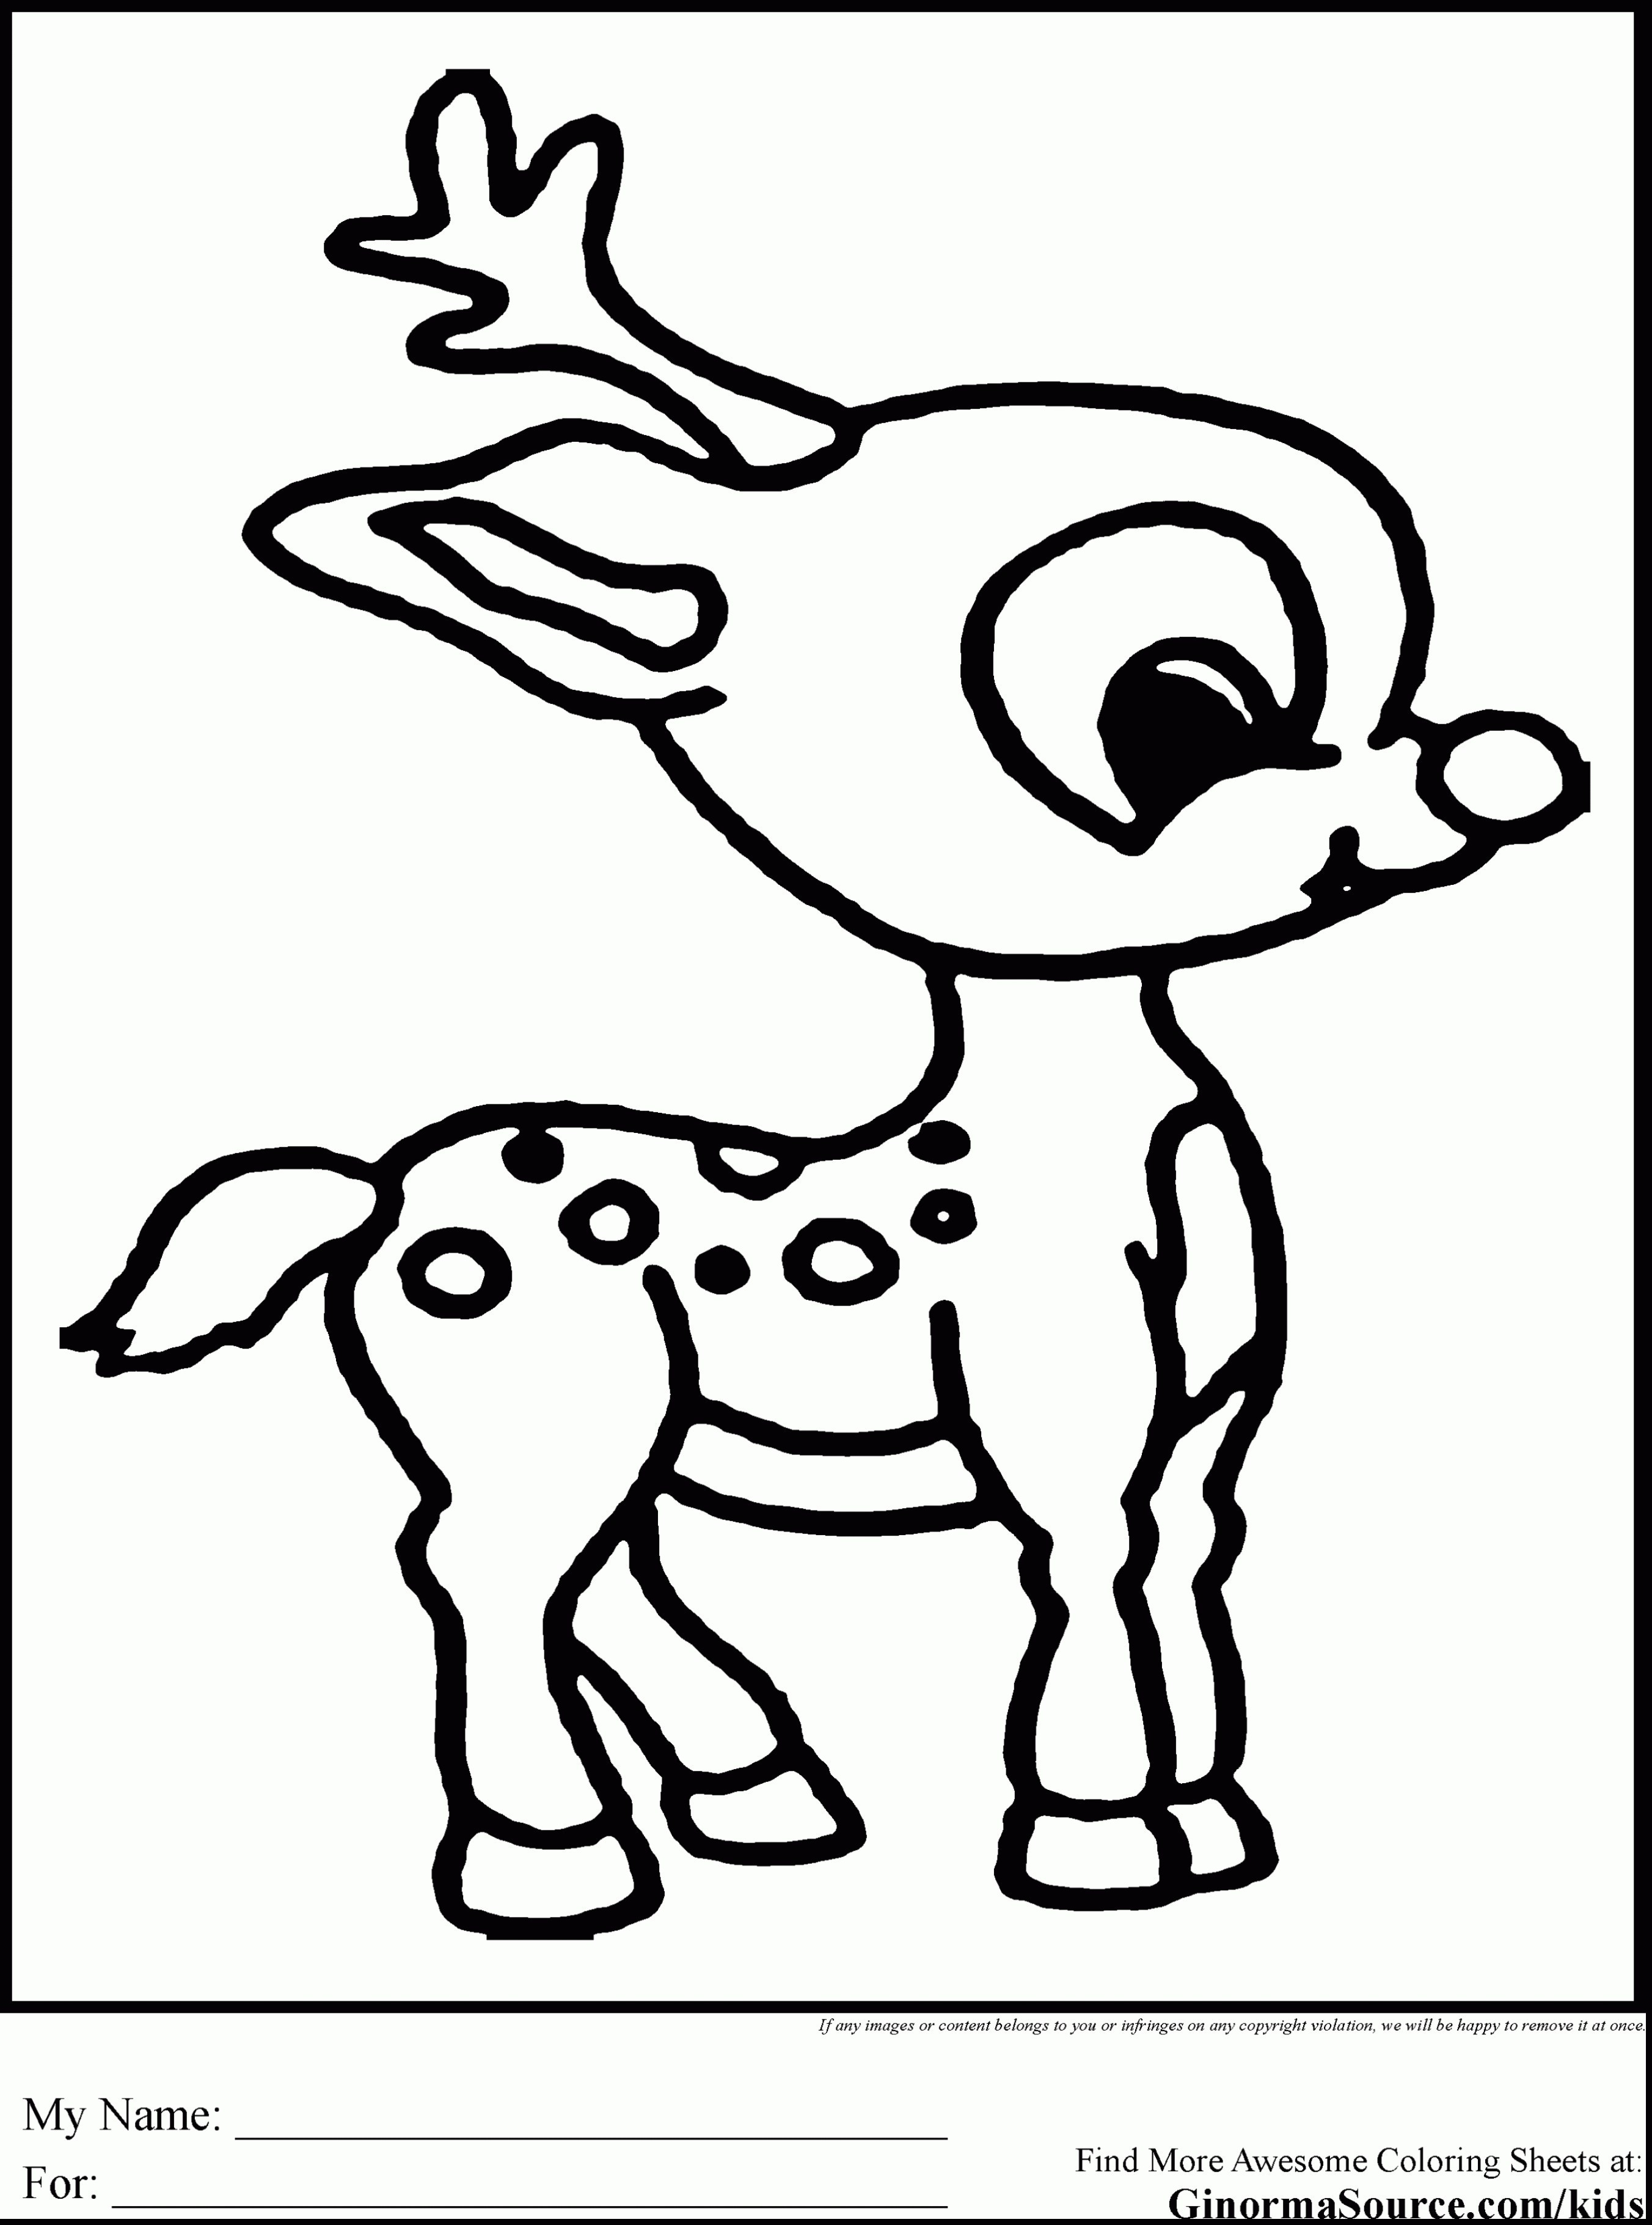 Reindeer Cartoon Coloring Pages at Free printable